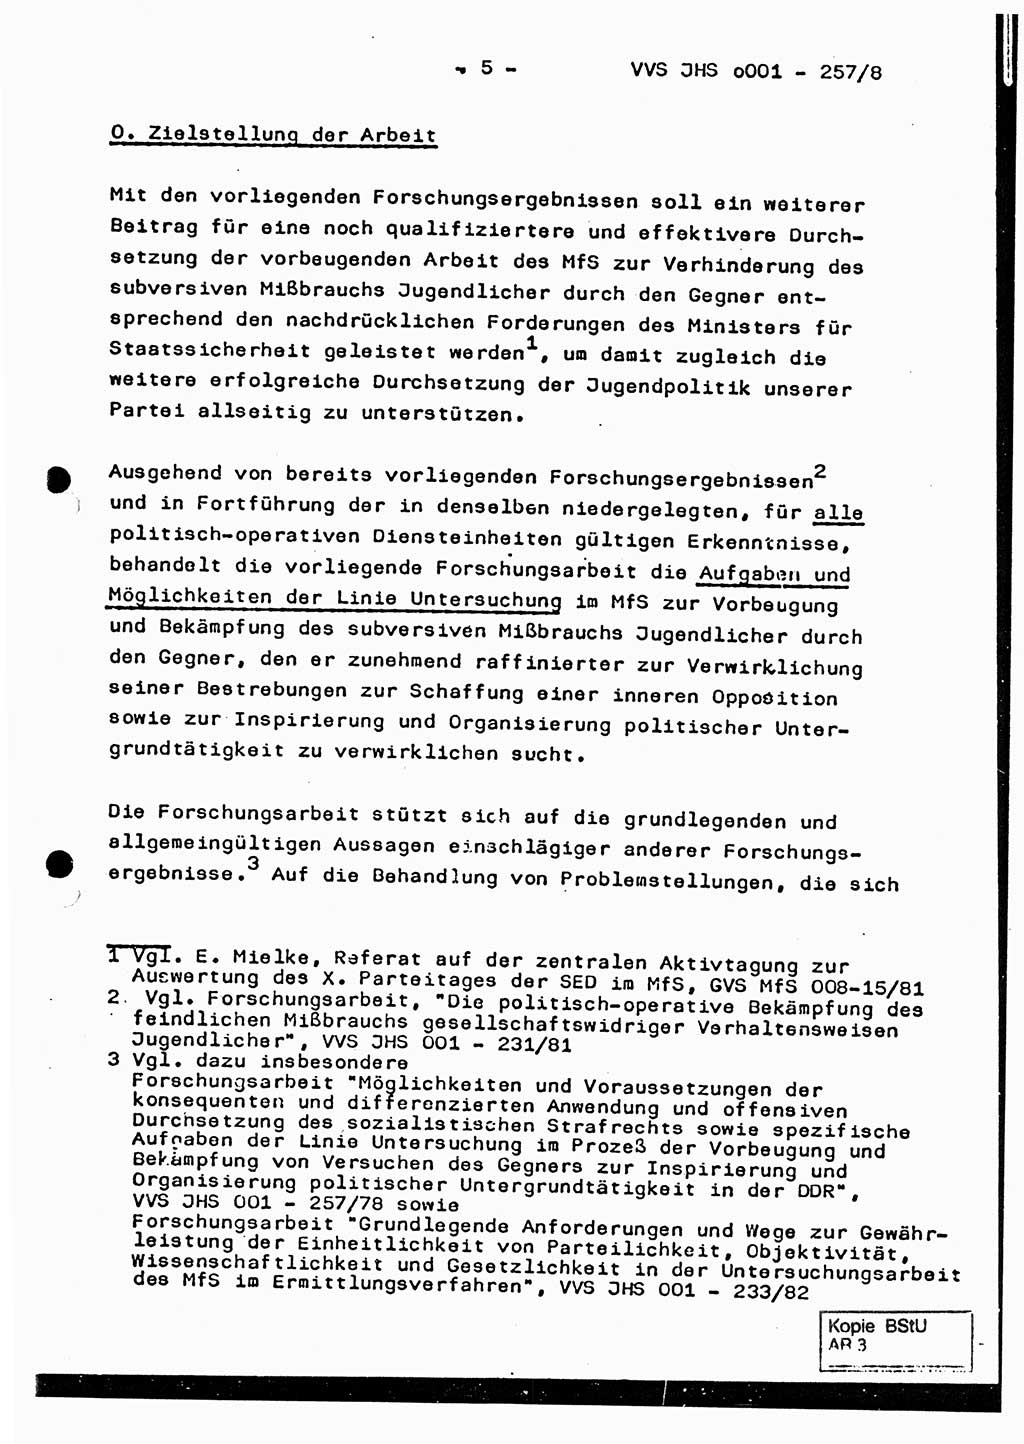 Dissertation, Oberst Helmut Lubas (BV Mdg.), Oberstleutnant Manfred Eschberger (HA IX), Oberleutnant Hans-Jürgen Ludwig (JHS), Ministerium für Staatssicherheit (MfS) [Deutsche Demokratische Republik (DDR)], Juristische Hochschule (JHS), Vertrauliche Verschlußsache (VVS) o001-257/83, Potsdam 1983, Seite 5 (Diss. MfS DDR JHS VVS o001-257/83 1983, S. 5)